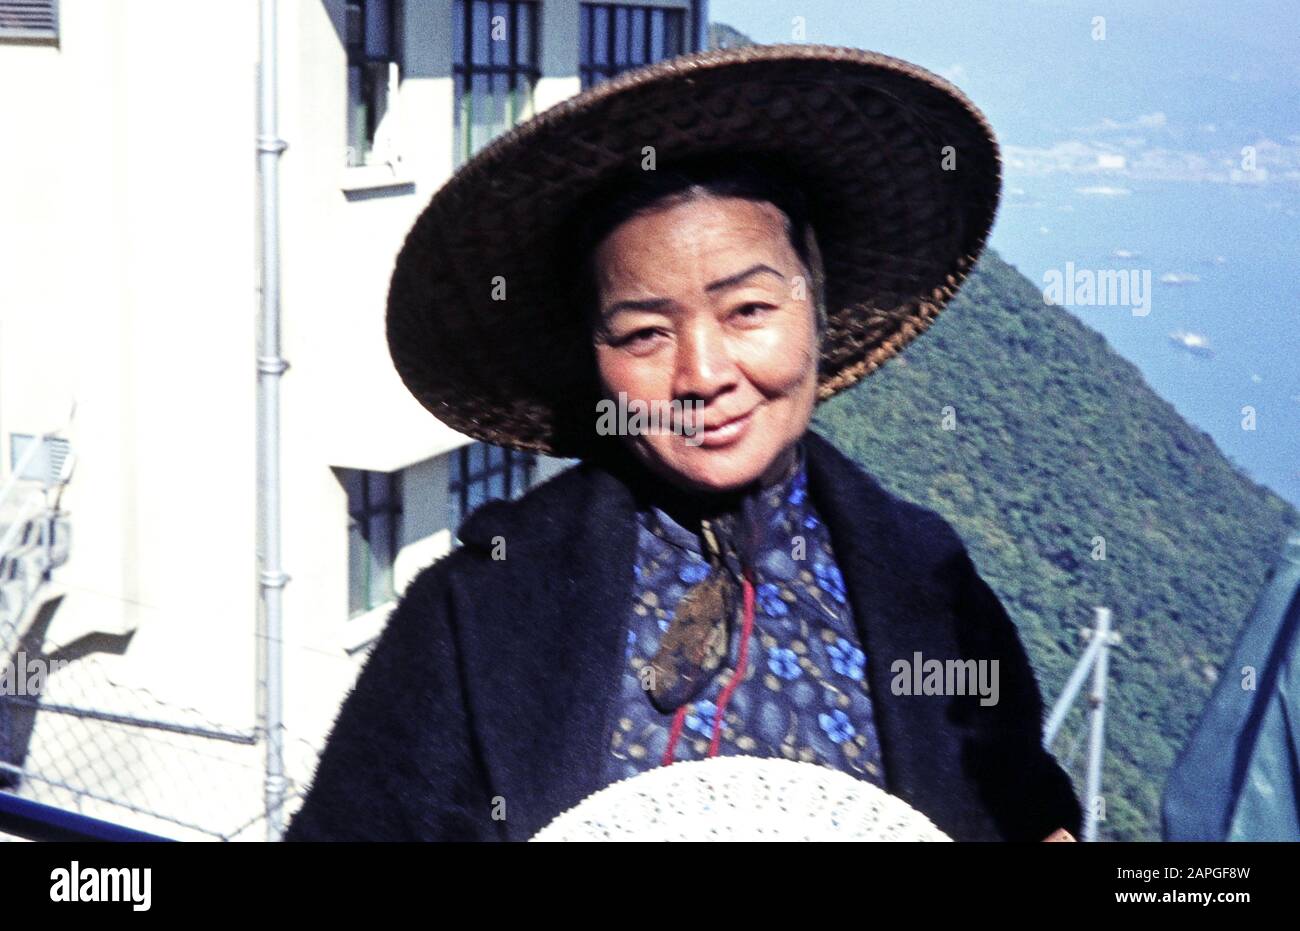 Porträt einer Einheimischen mit Kegelhut auf dem Victoria Peak a Victoria, Hongkong Juli 1968. Ritratto di una donna locale con un cappello conico sul Victoria Peak a Victoria, Hong Kong luglio 1968. Foto Stock